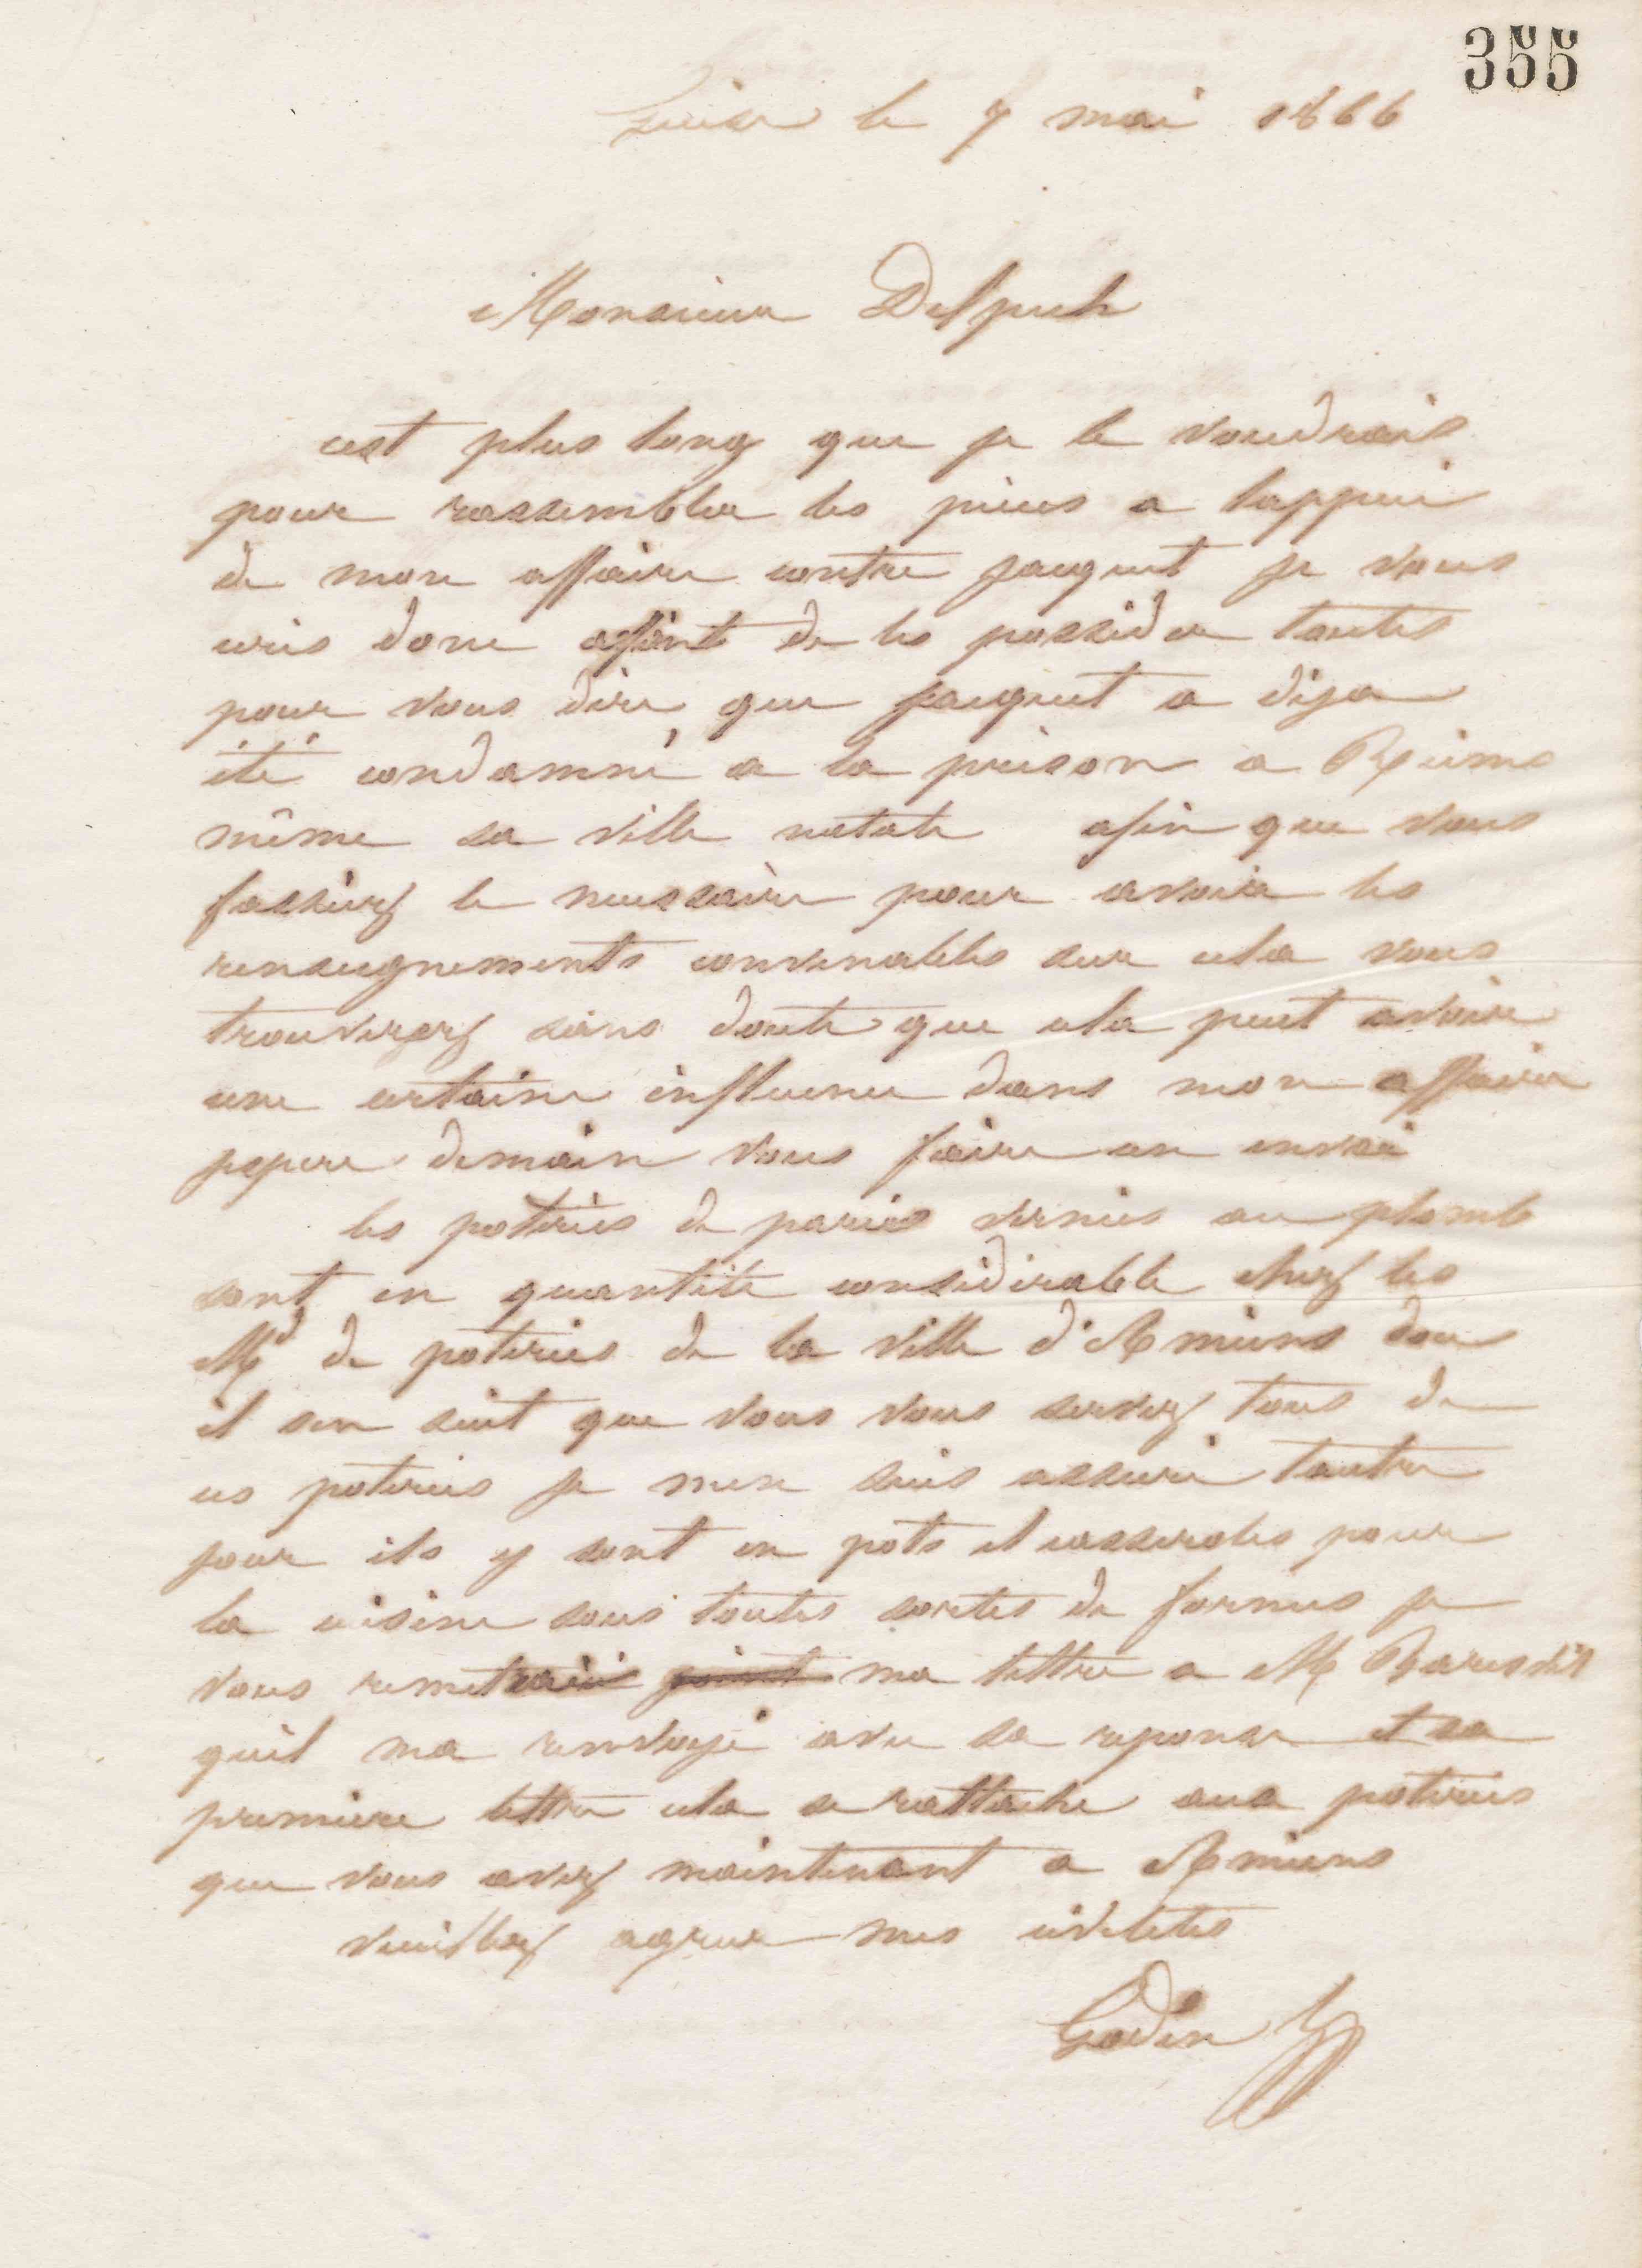 Jean-Baptiste André Godin à Alphonse Delpech, 7 mai 1866